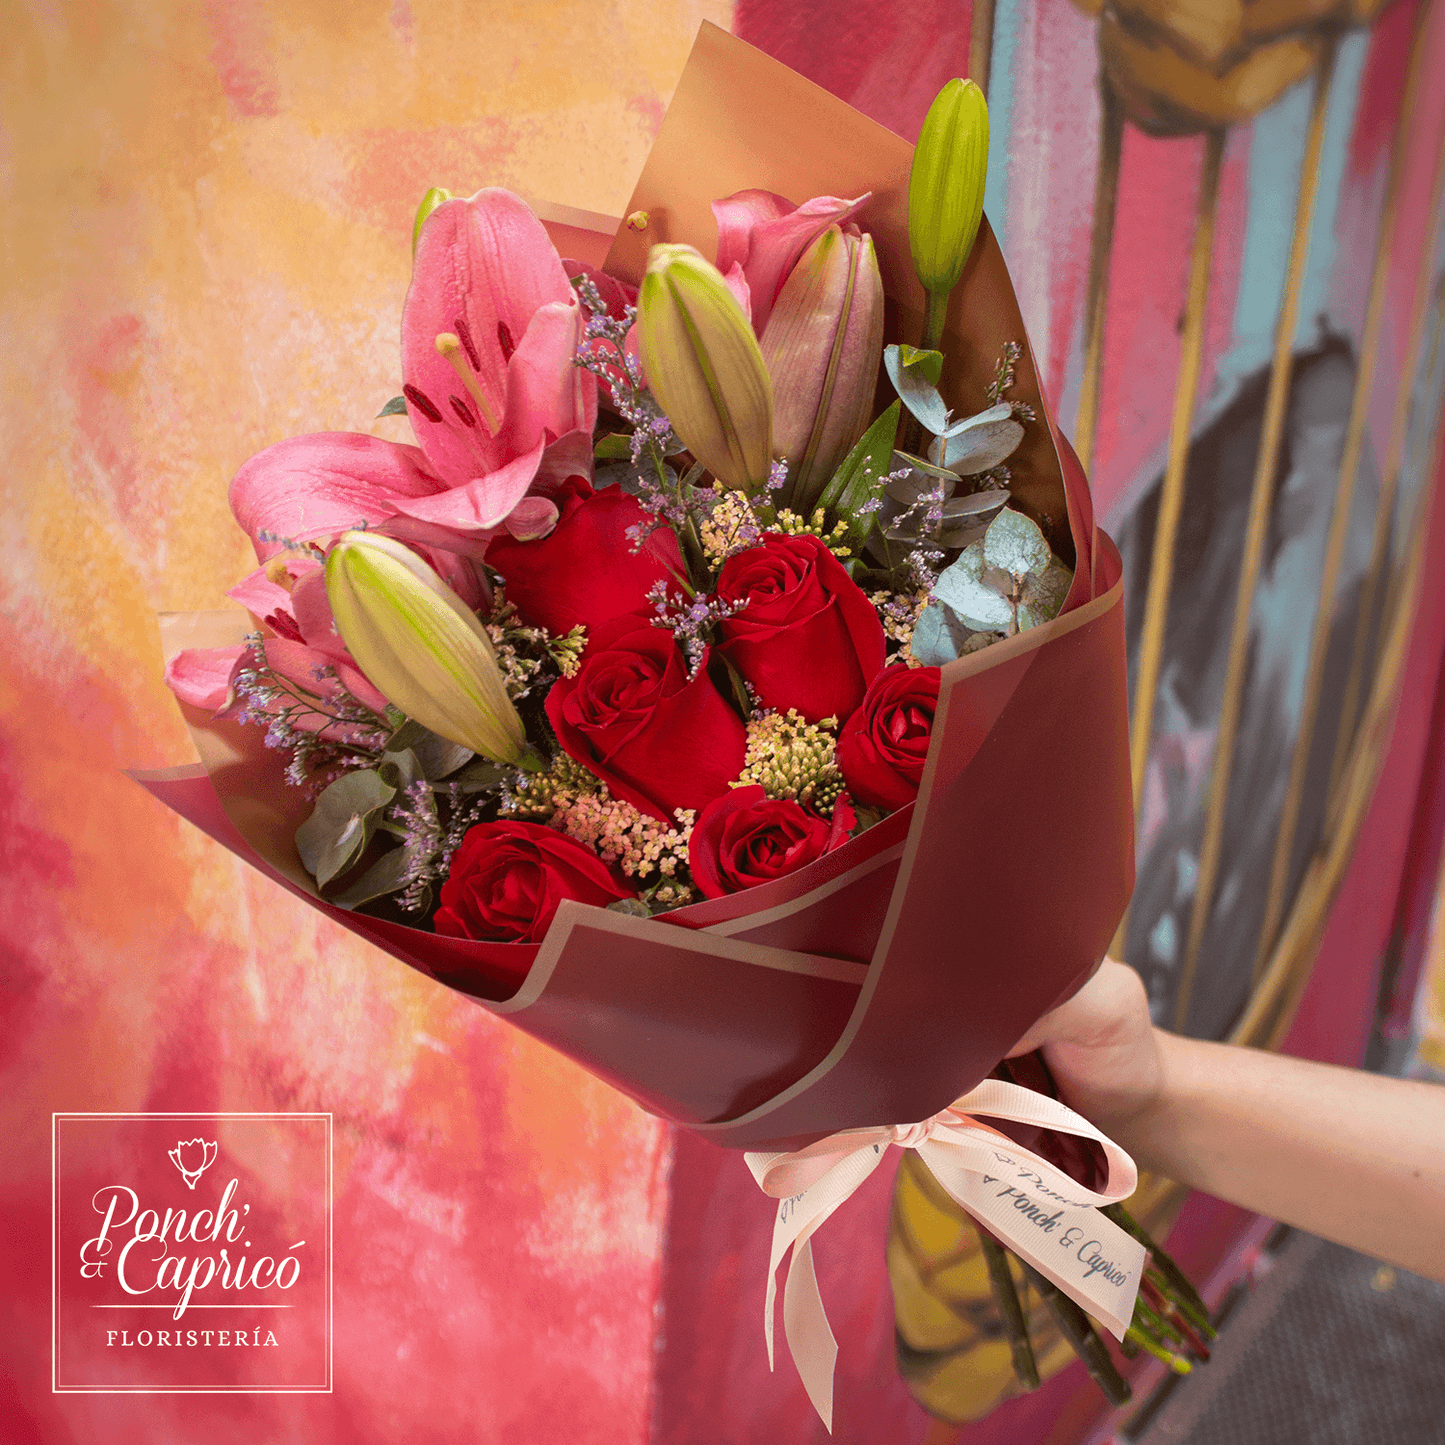 Lindo ramillete atado a mano de Rosas Rojas, Lillies y Aquilea, Limonio y follaje; envuelto en elegante papel y delicado moño pequeño de tela.